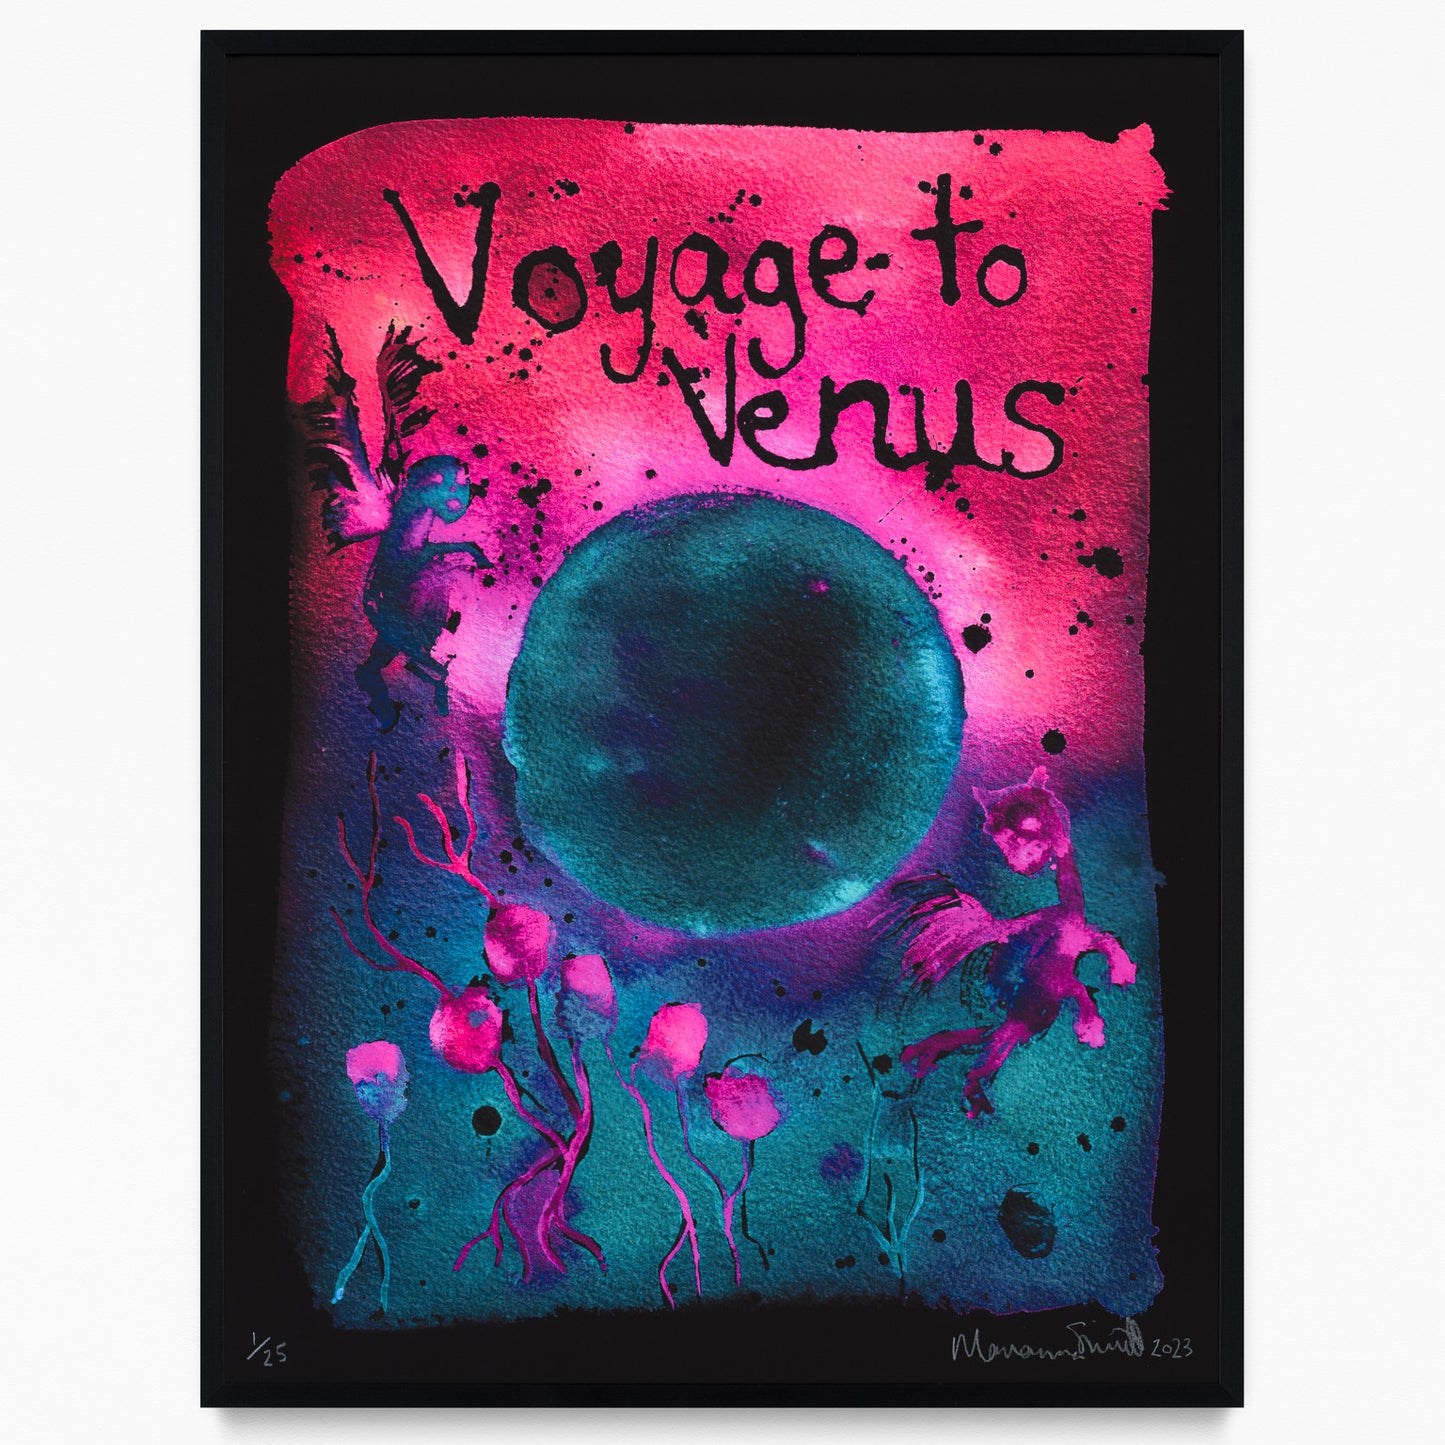 Voyage to Venus